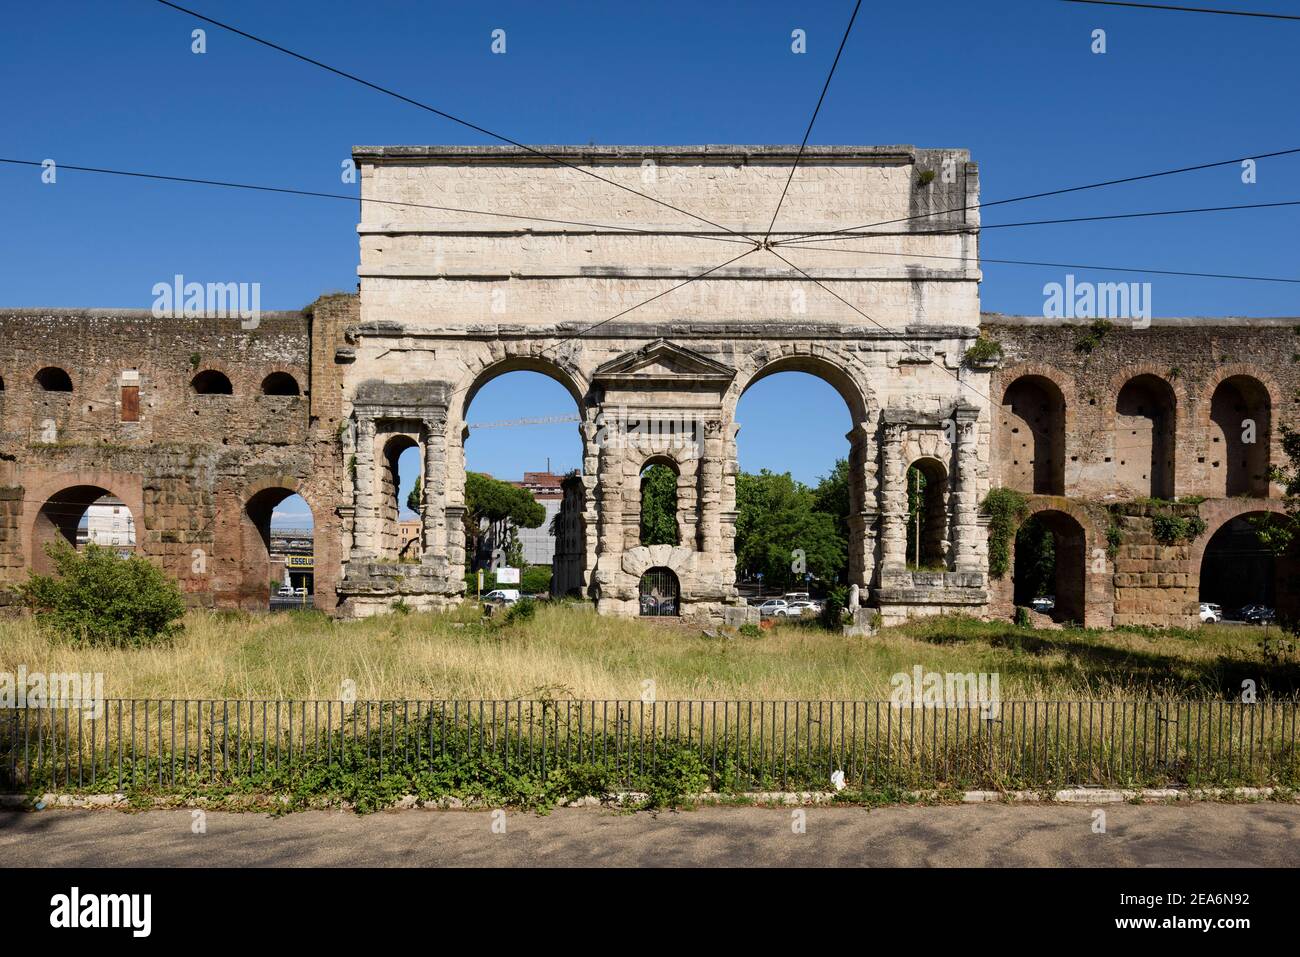 Roma. Italia. Porta maggiore (vista interna, affacciata sulla città), costruita nel 52 d.C. dall'imperatore Claudio, è una delle porte orientali dell'Aur del III secolo Foto Stock